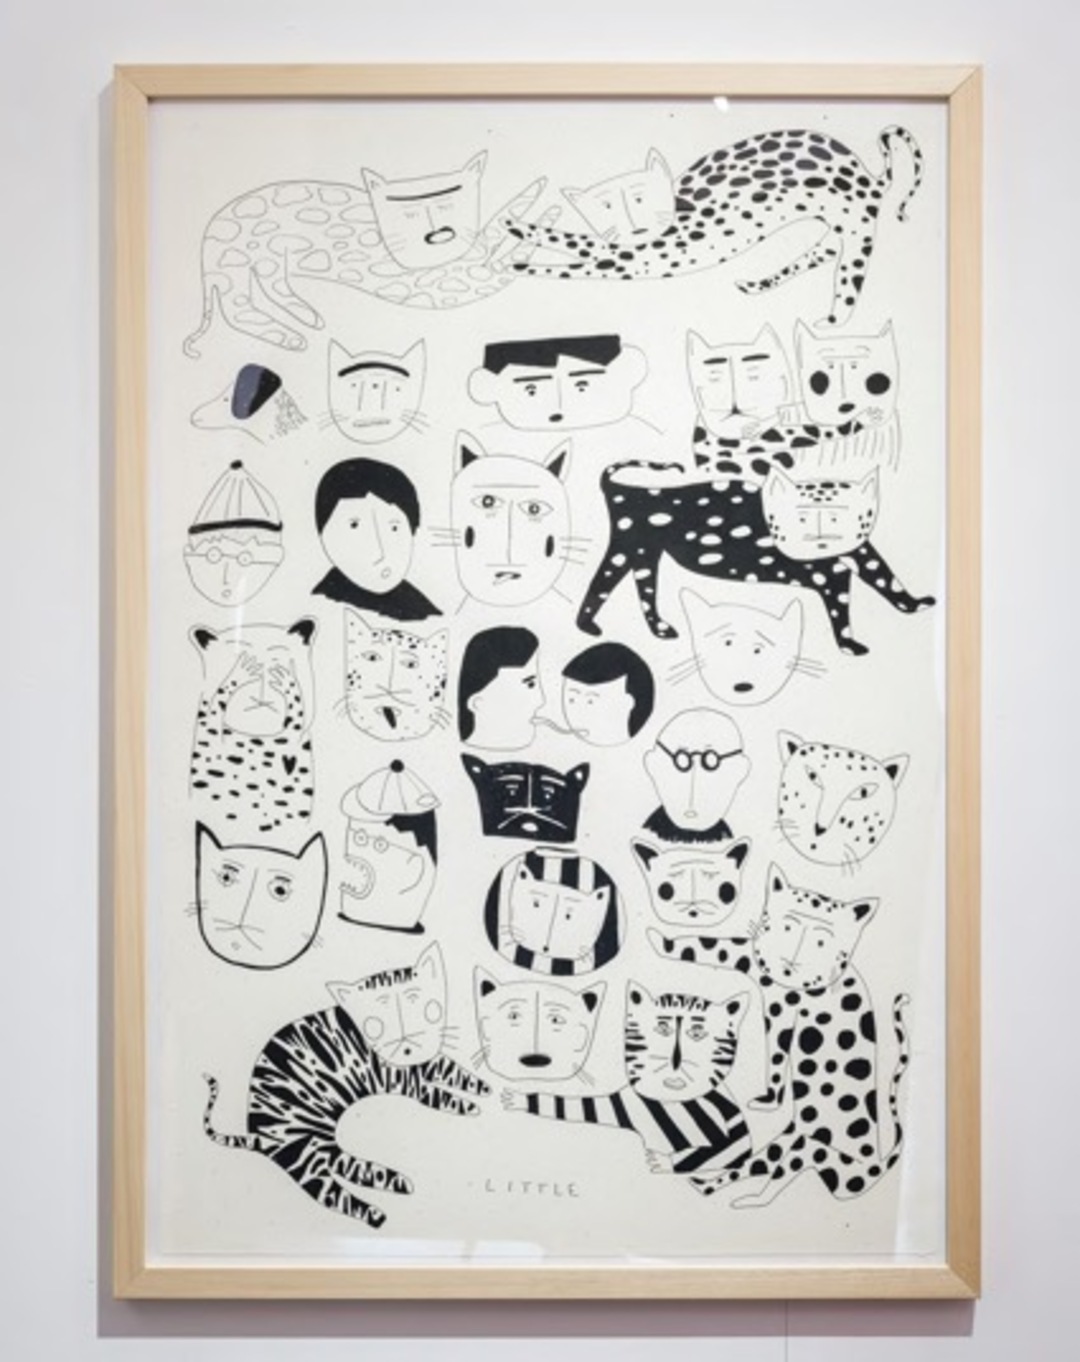 'Gatetes y amigos', obra de Little, que participa en JustMad 2022 con Di Gallery. Dibujo en negro sobre fondo blanco que representa rostros de personas y gatos.